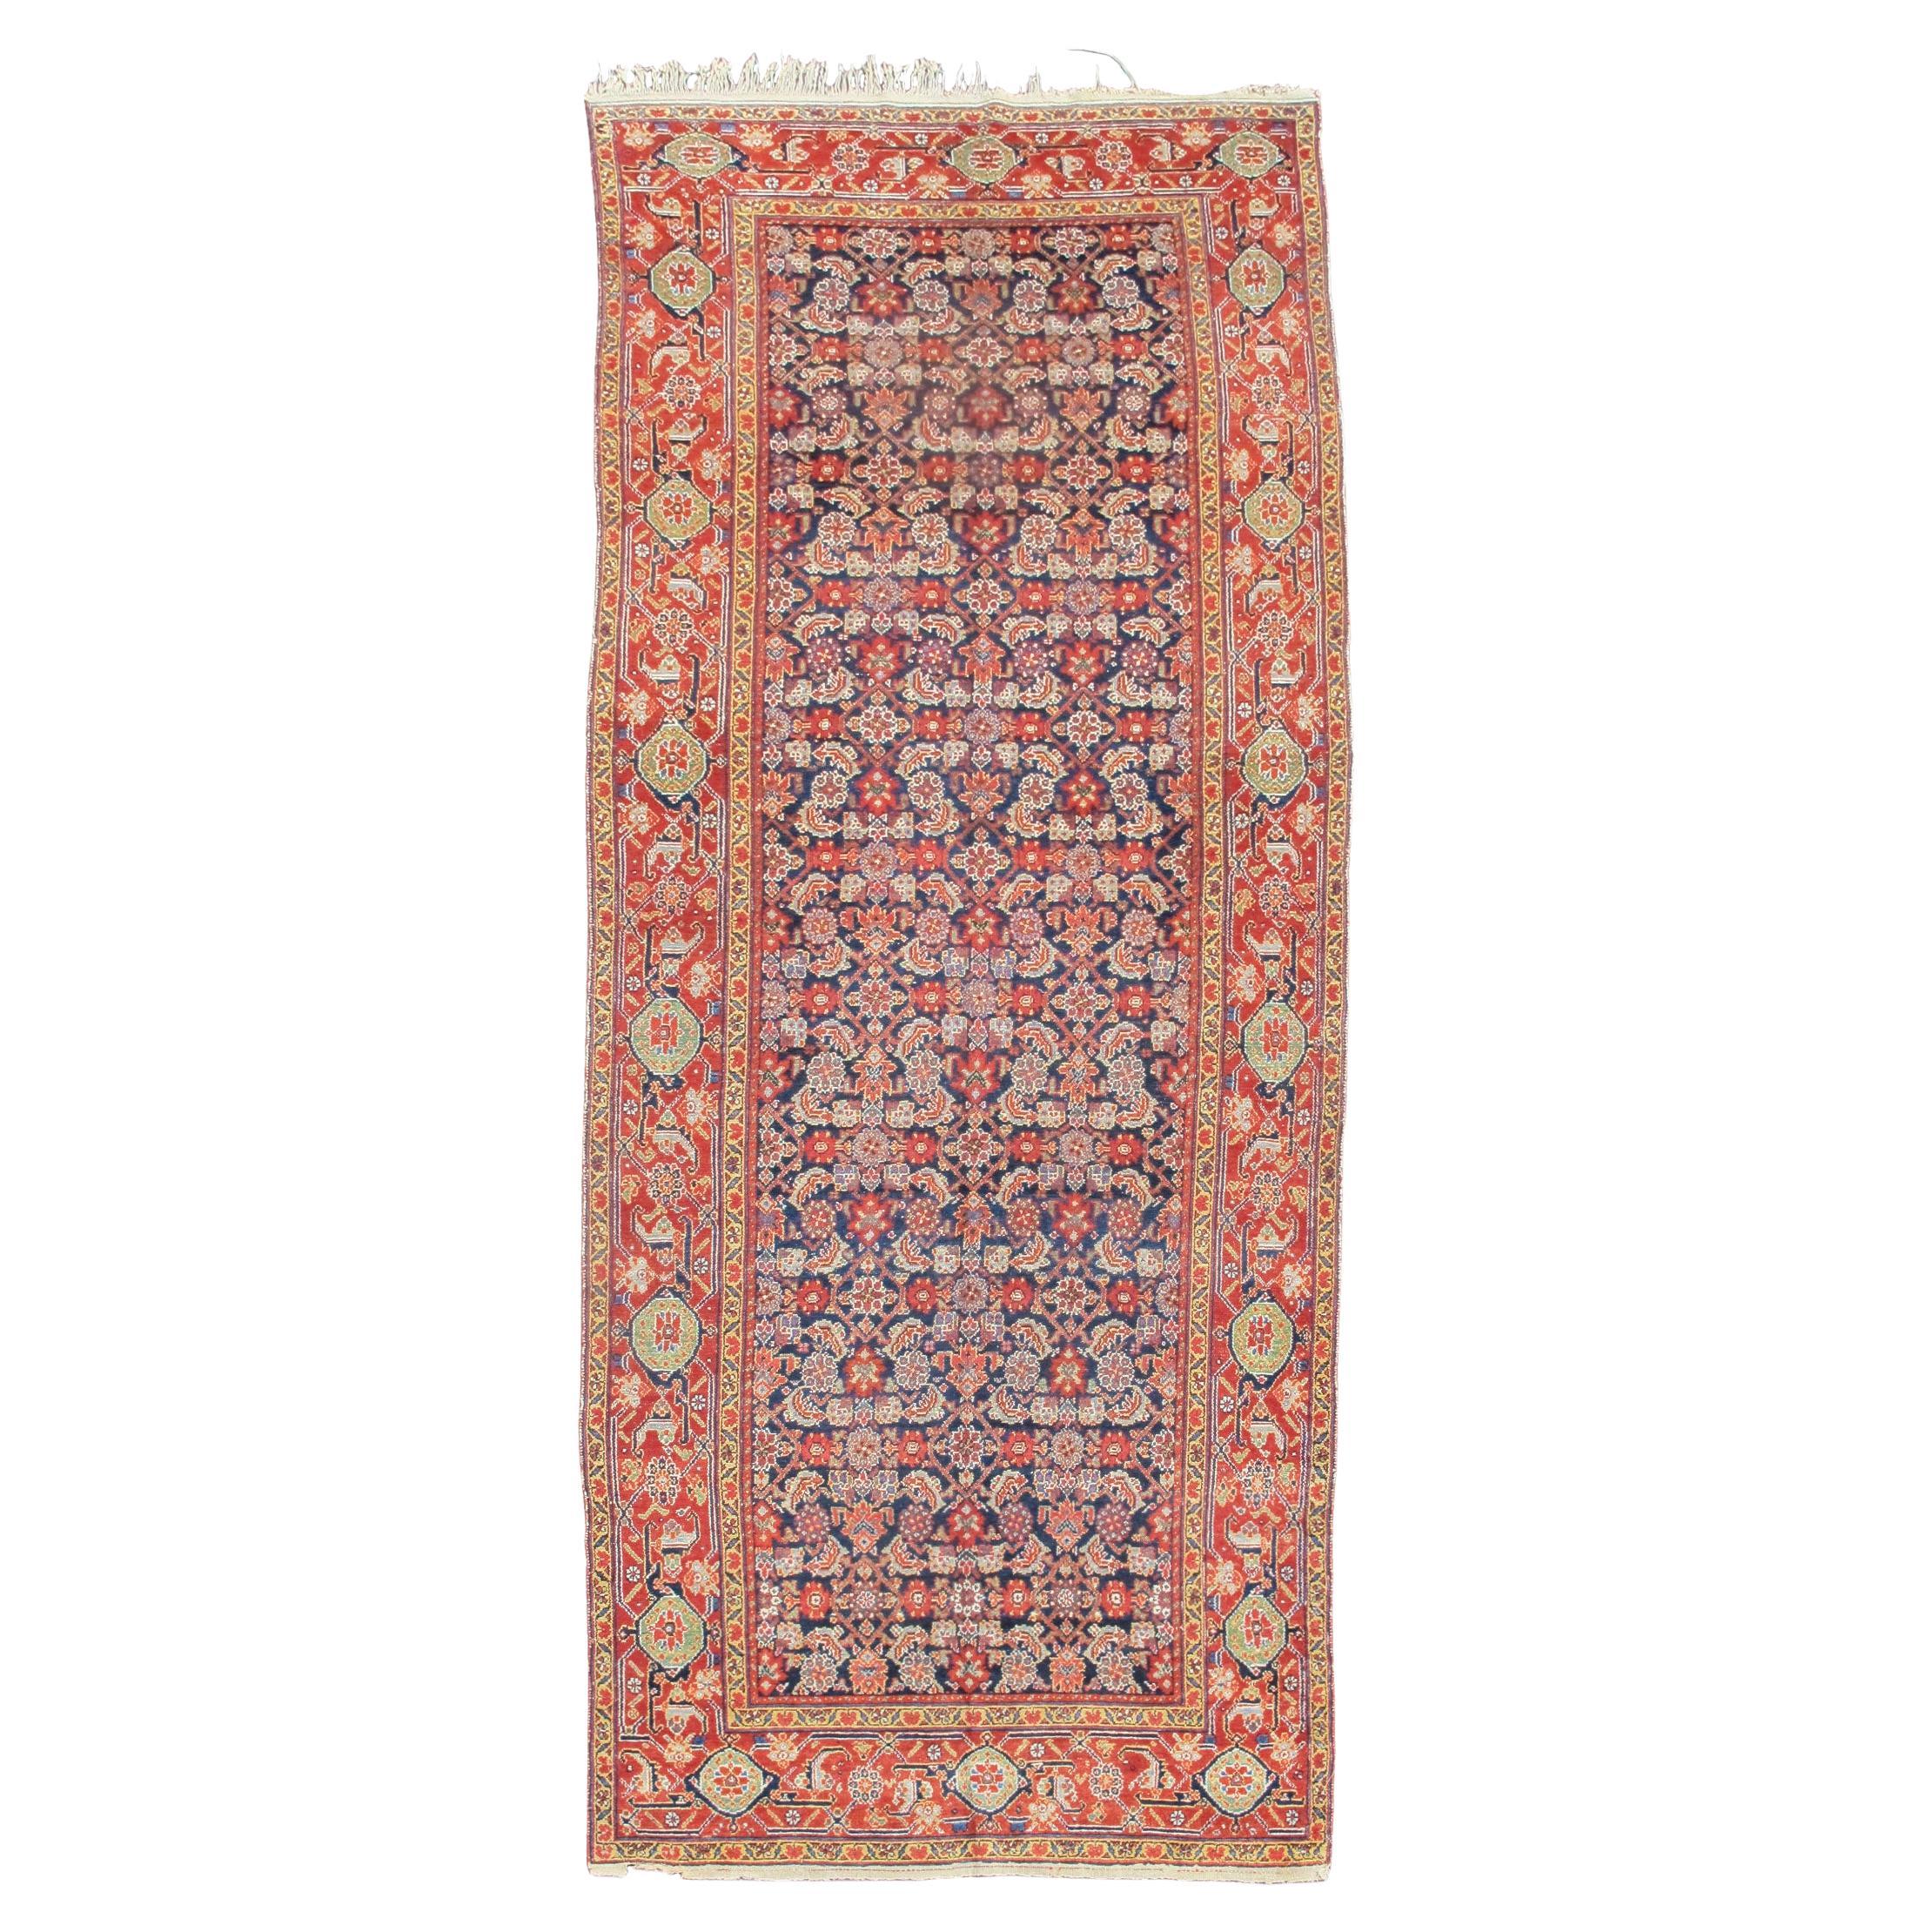 Tapis long du nord-ouest de la Perse, 19e siècle